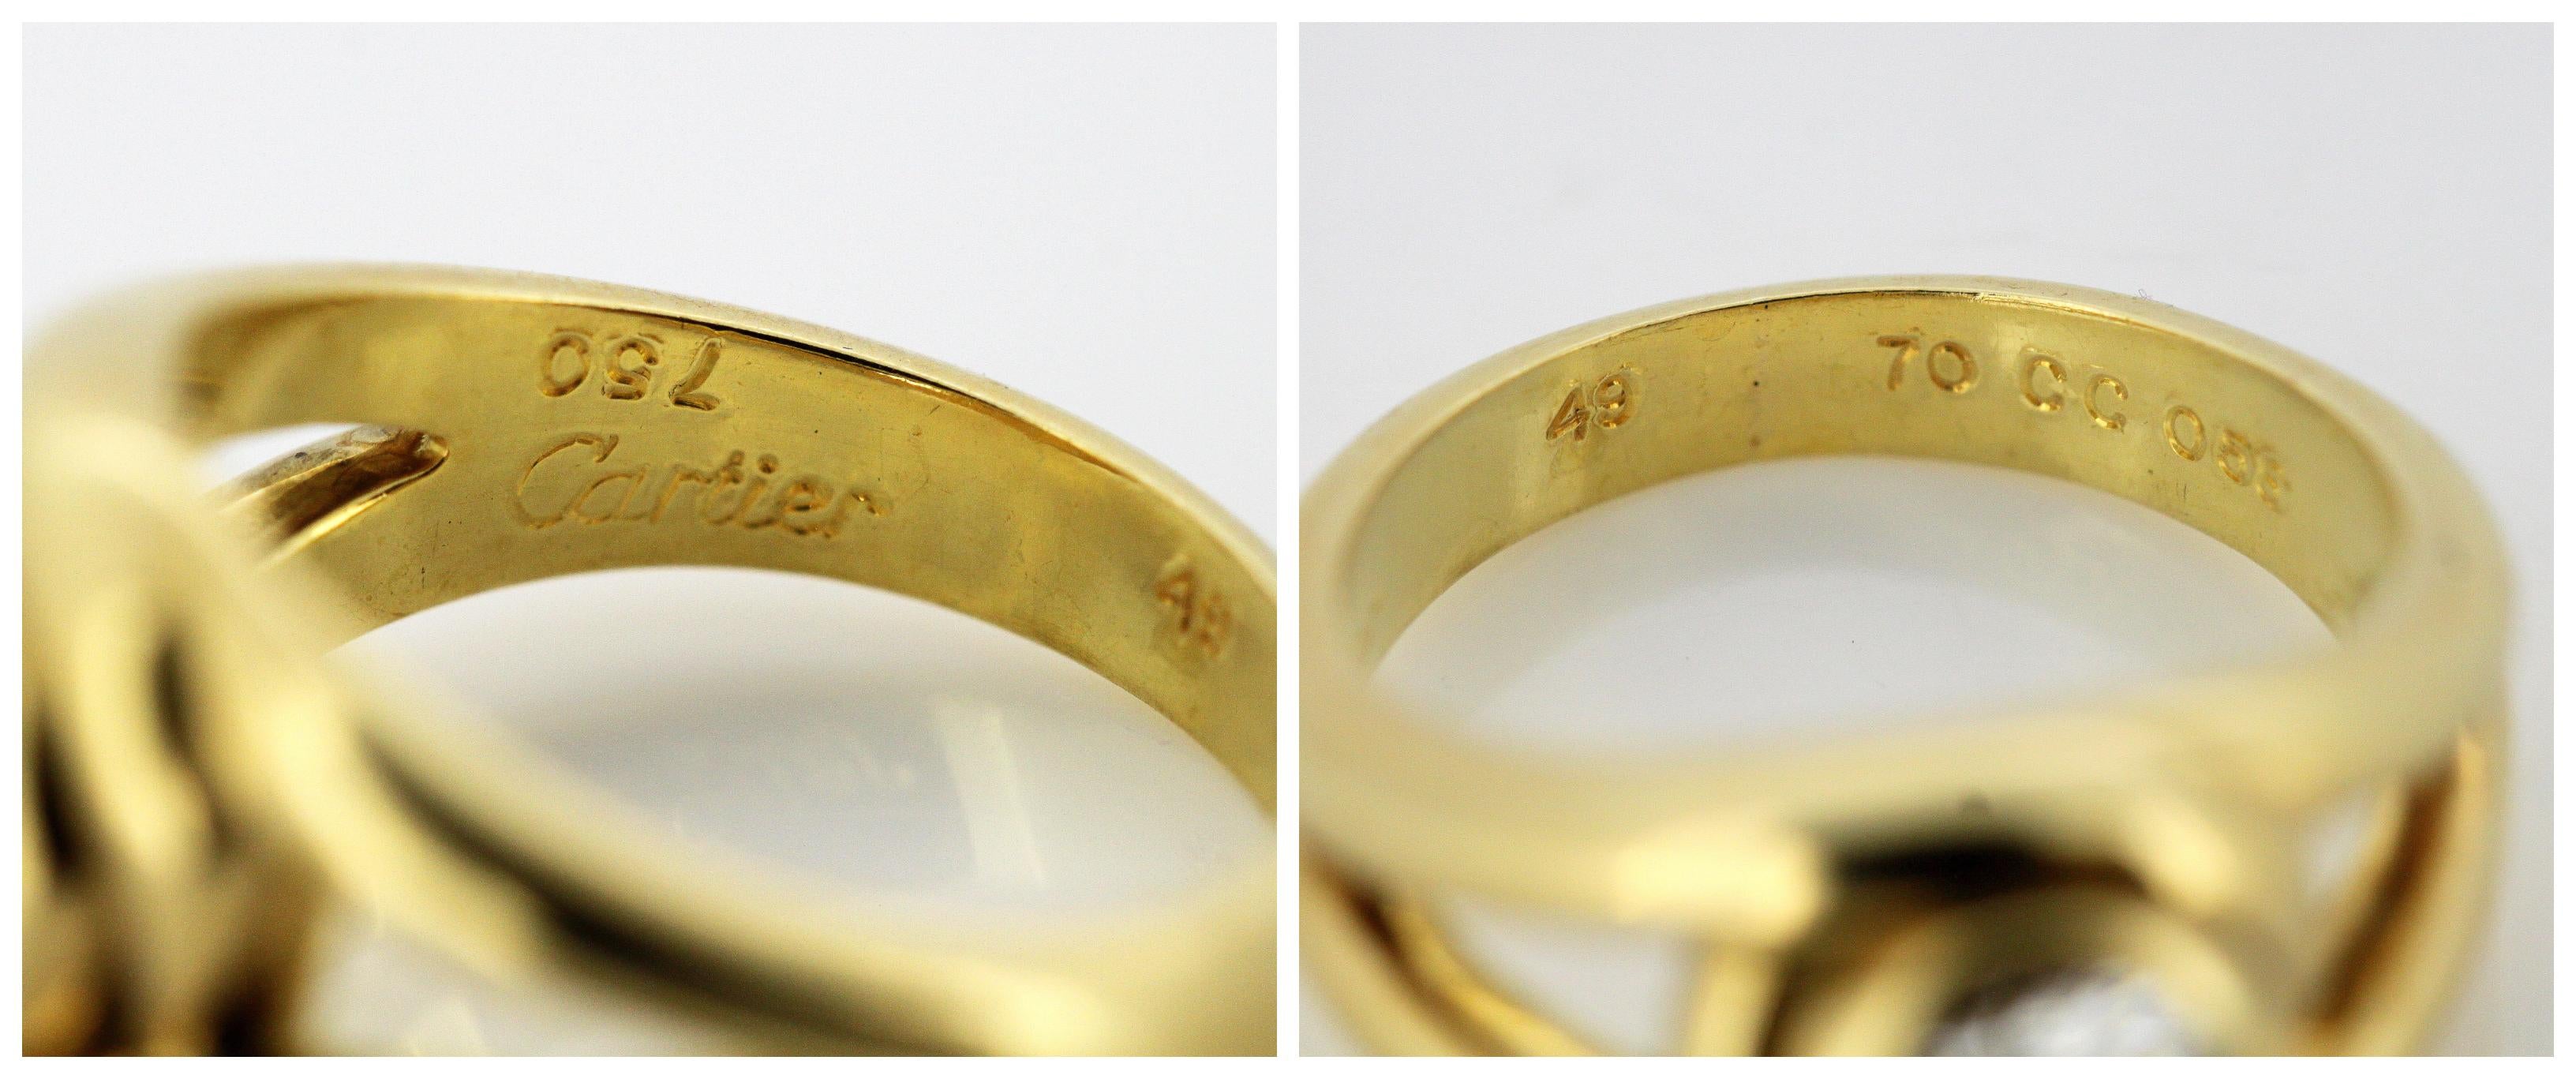 Cartier 18 Karat Gold Ladies Ring with 0.58 Carat Diamond, Cartier, Paris 6